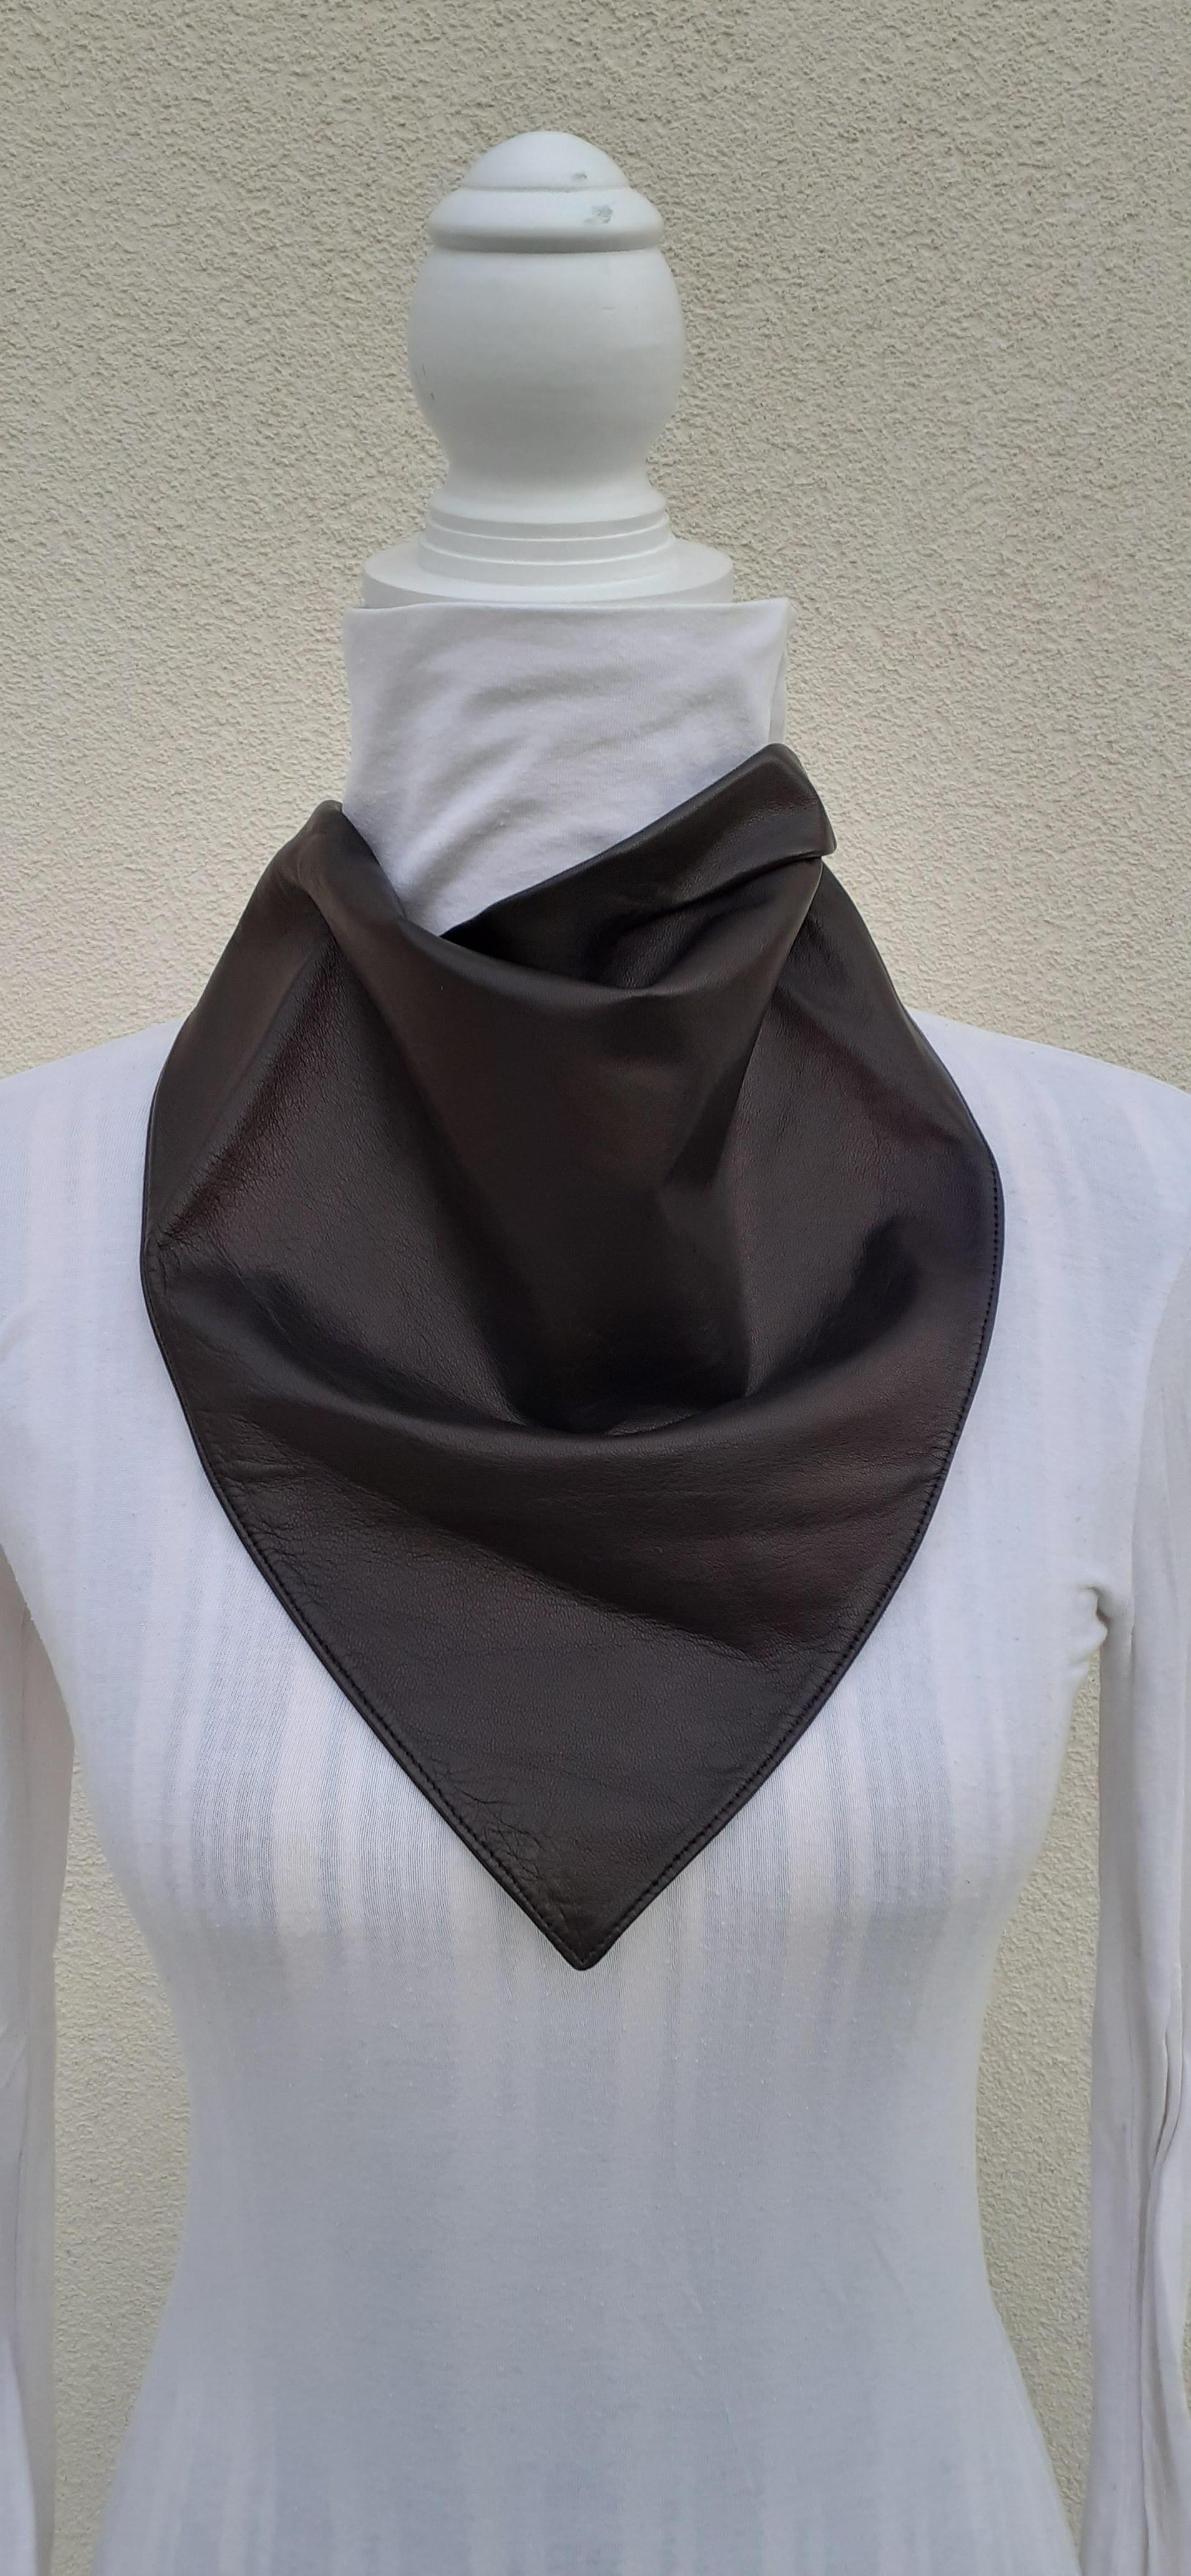 Seltener authentischer Hermès-Schal

